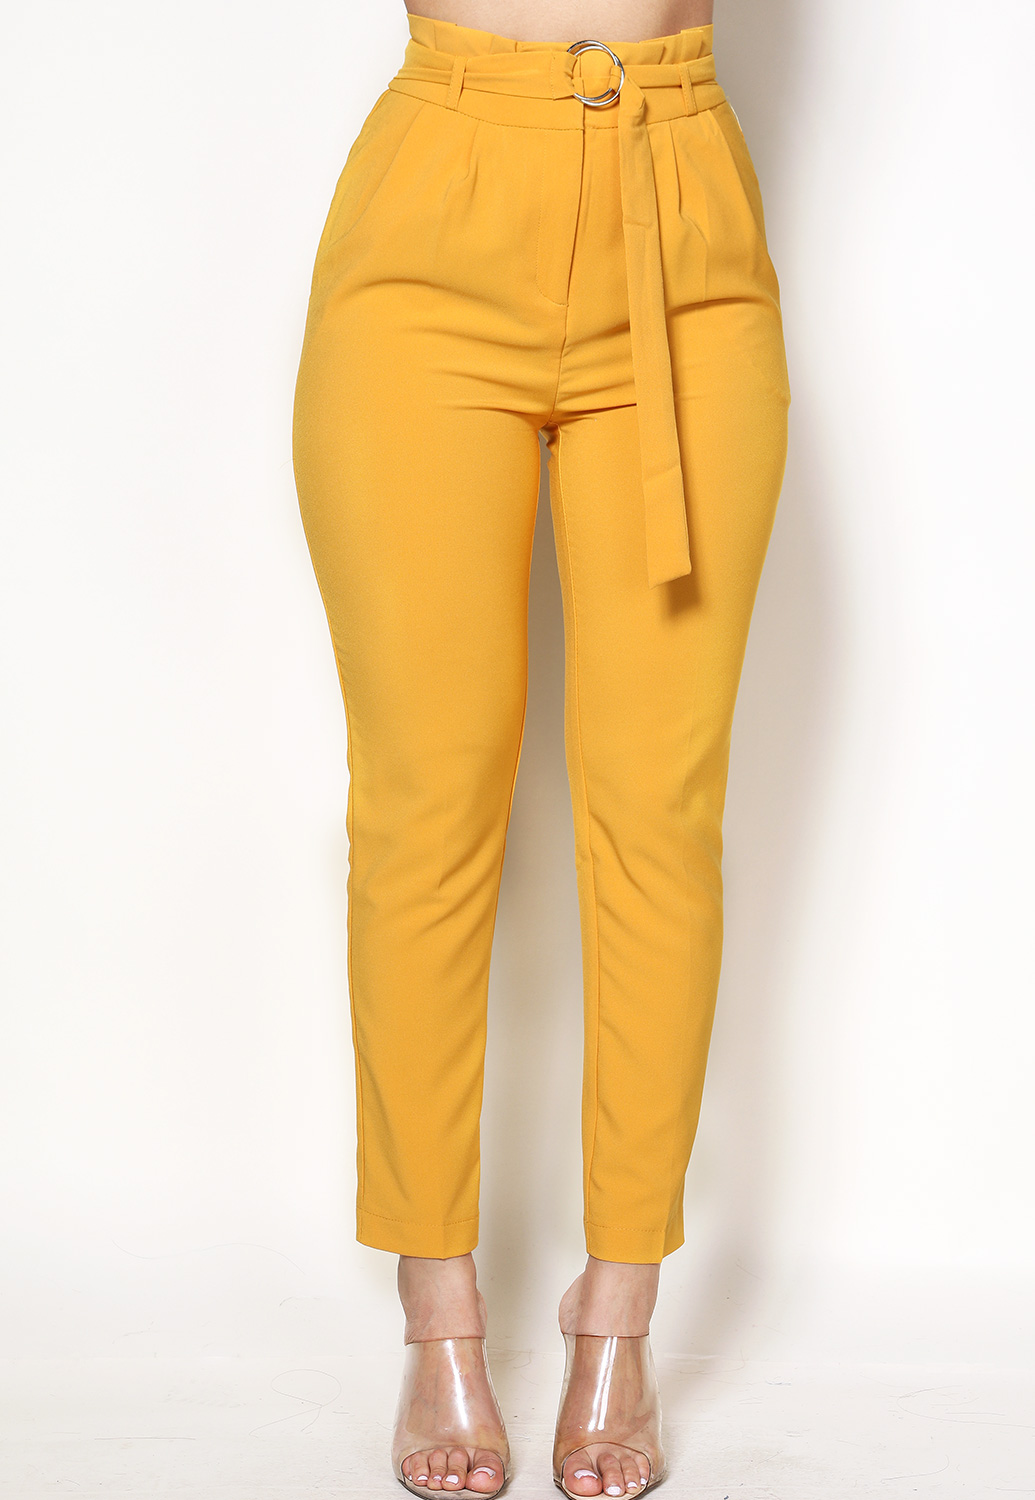 Belted Dressy Pants | Shop Bottoms at Papaya Clothing